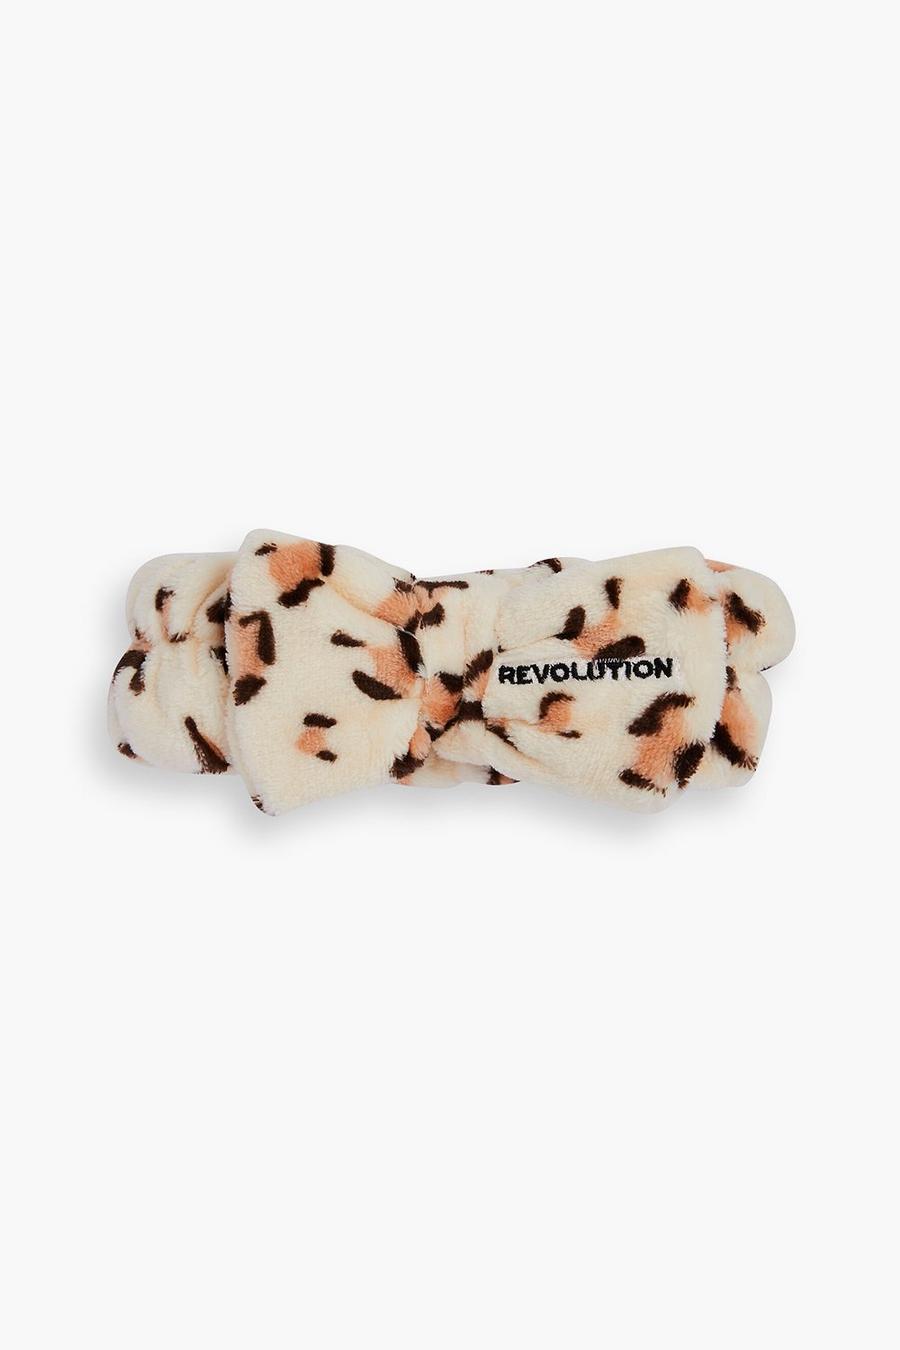 Revolution Skincare - Fascia per capelli Luxe leopardata, Beige